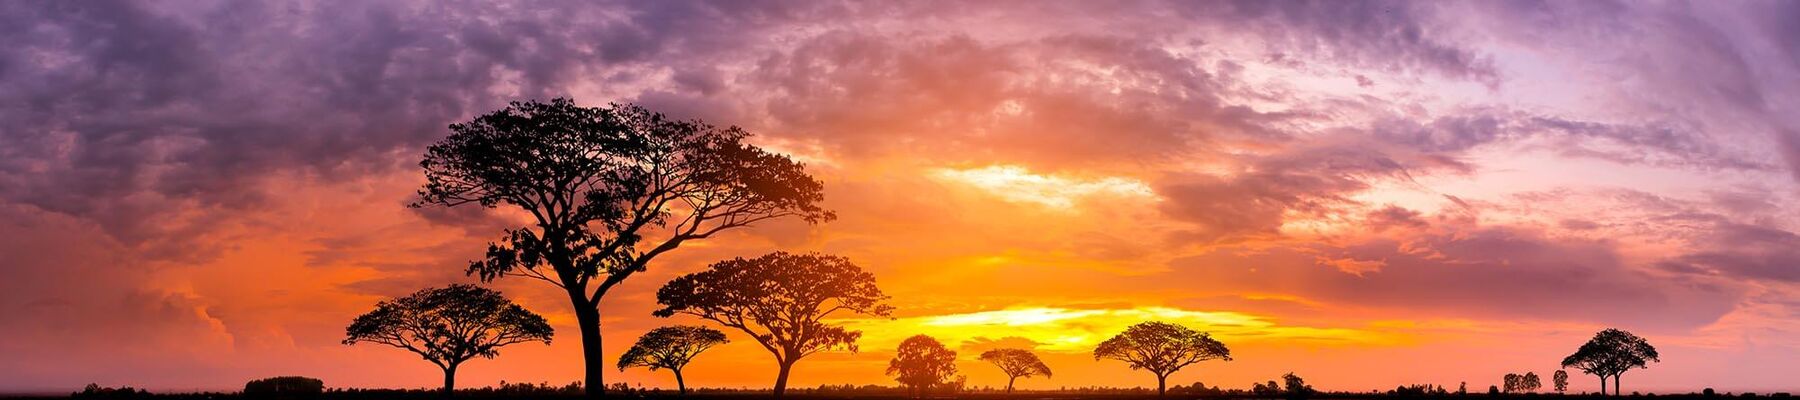 Foto von Moringa-Bäumen vor Sonnenuntergang